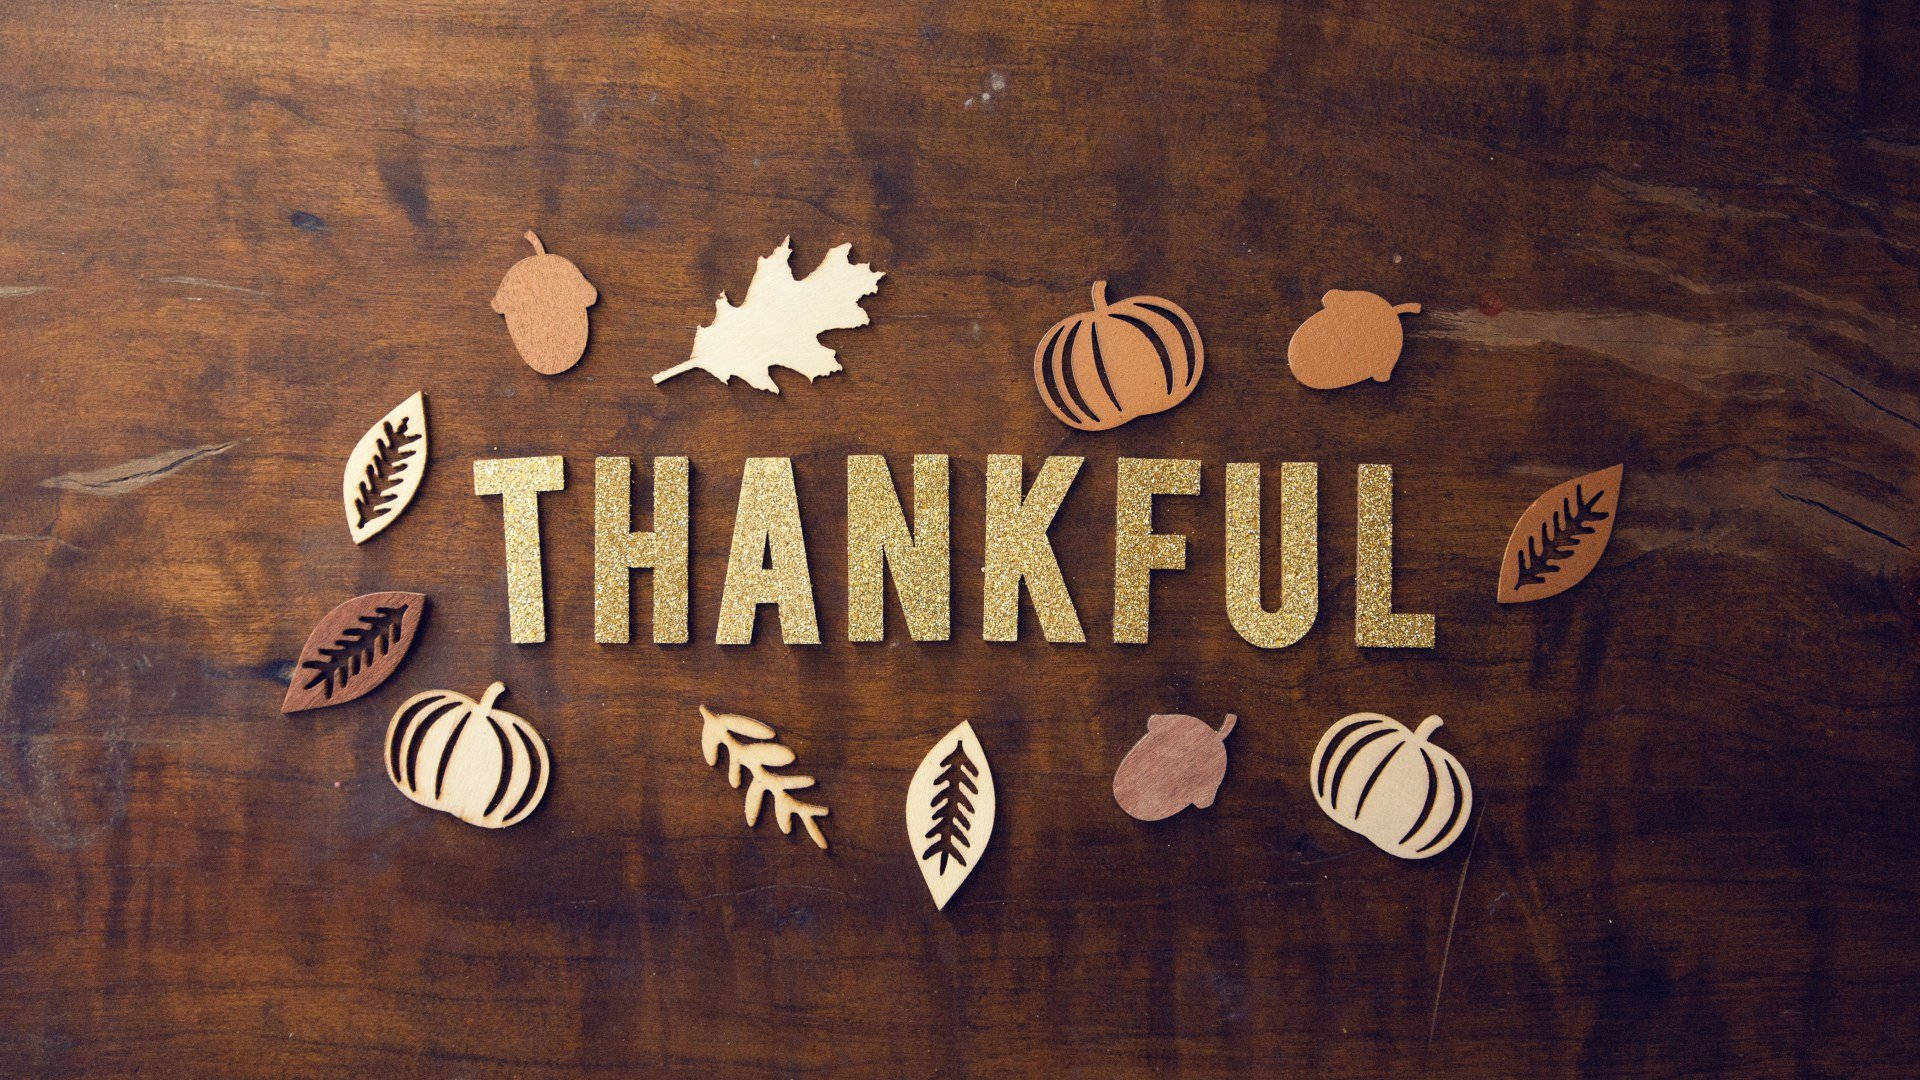 Thanksgiving Aesthetic Lettering Wallpaper